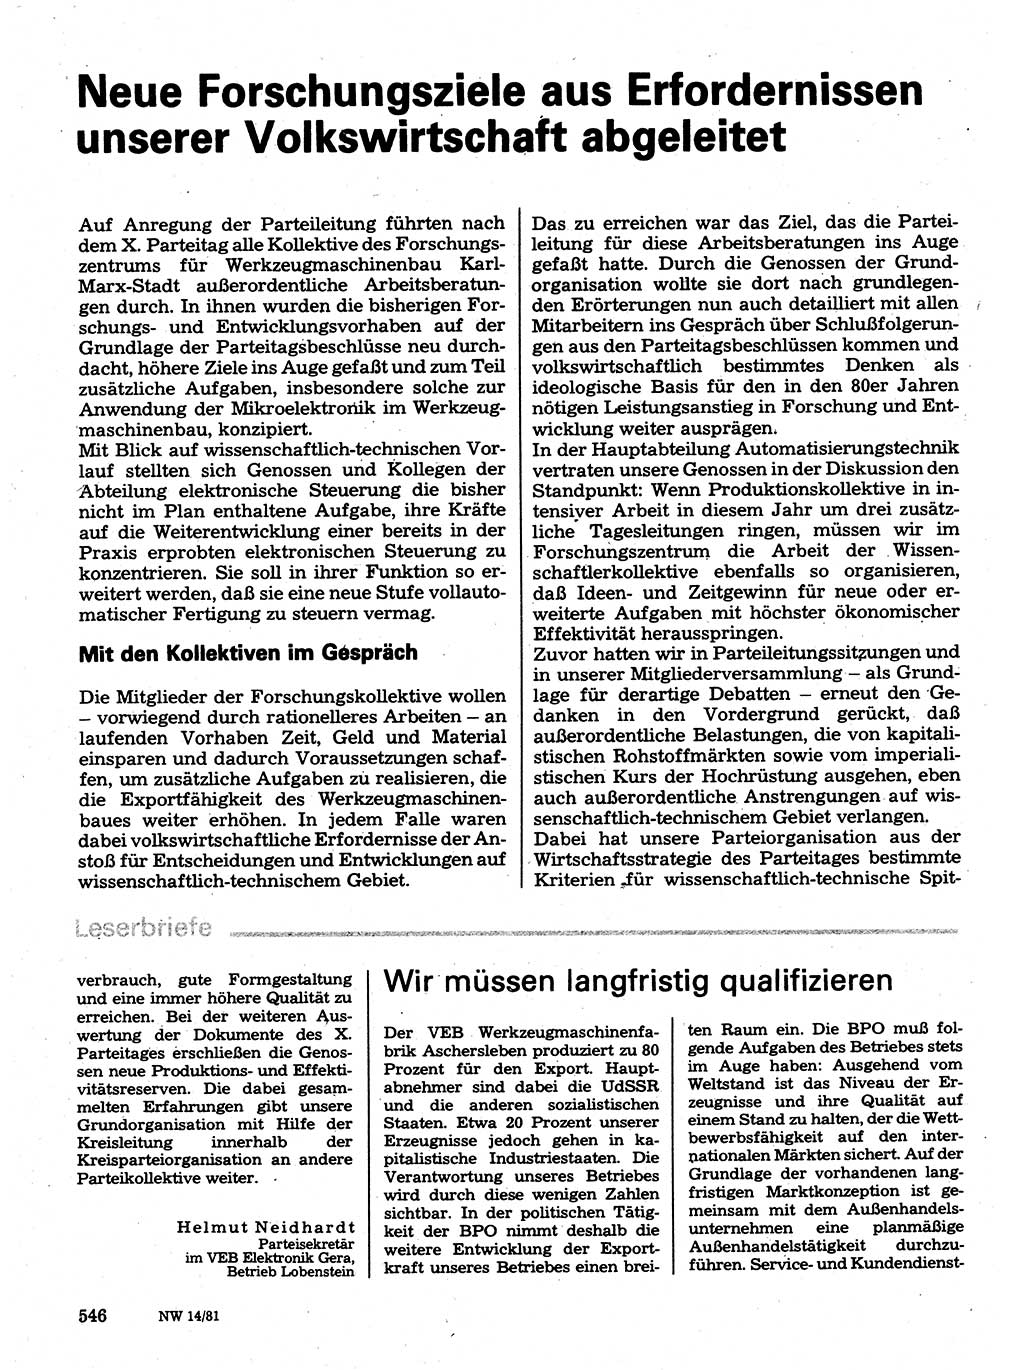 Neuer Weg (NW), Organ des Zentralkomitees (ZK) der SED (Sozialistische Einheitspartei Deutschlands) für Fragen des Parteilebens, 36. Jahrgang [Deutsche Demokratische Republik (DDR)] 1981, Seite 546 (NW ZK SED DDR 1981, S. 546)